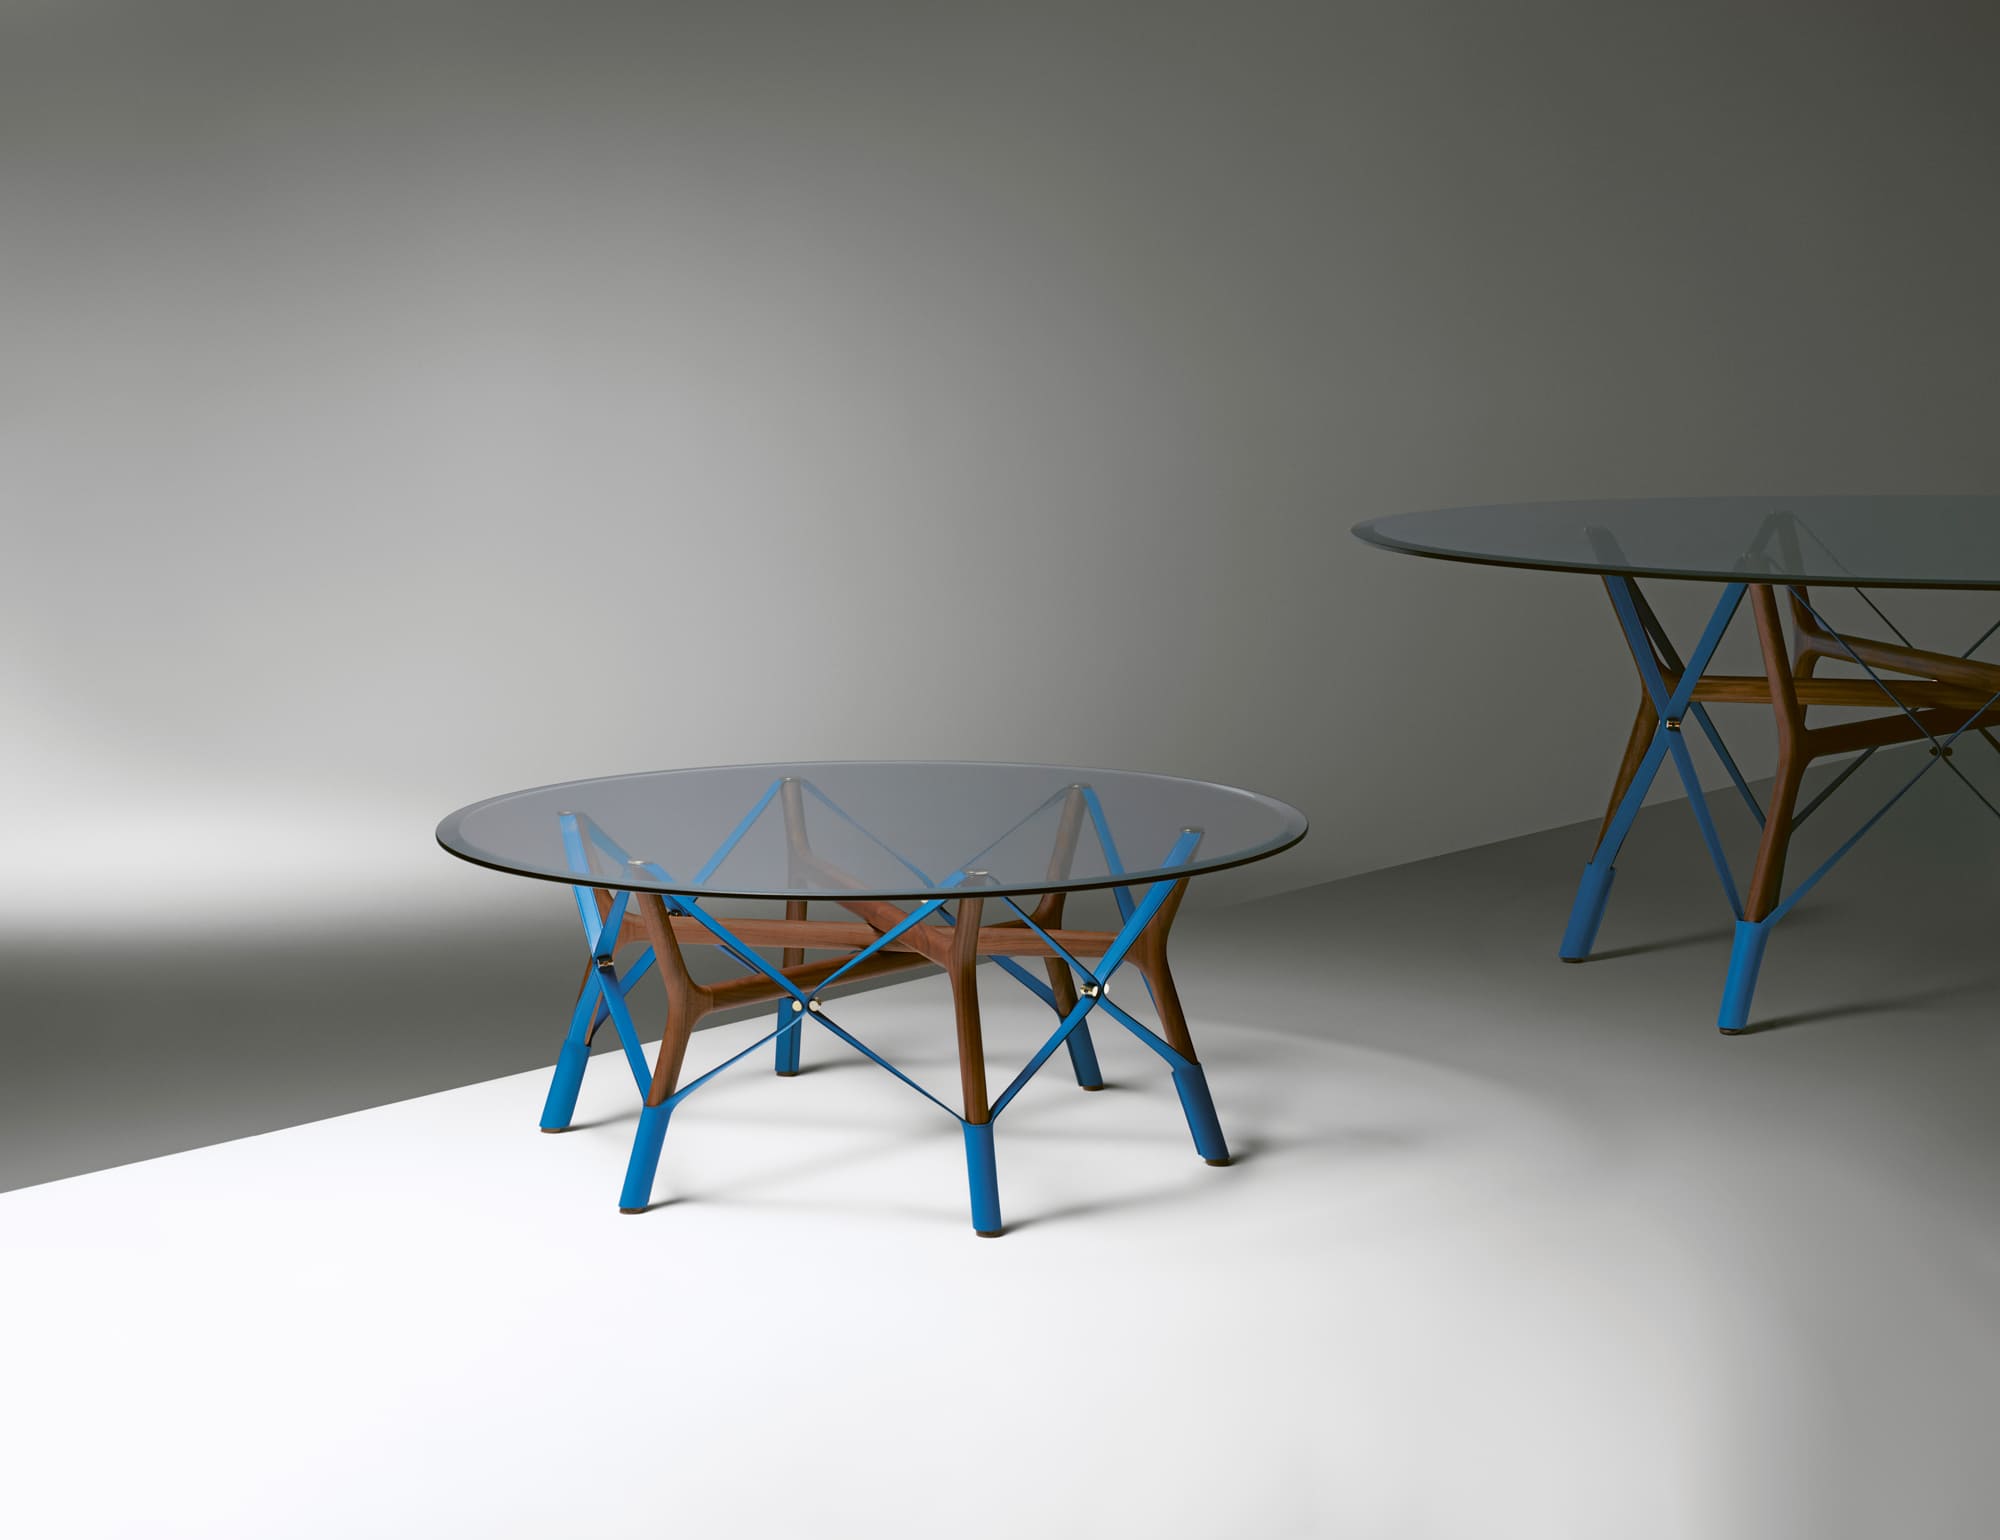 アトリエ・オイデザインによる「ルイ･ヴィトン オブジェ･ノマド コレクション」の最新作「SERPENTINE TABLE」